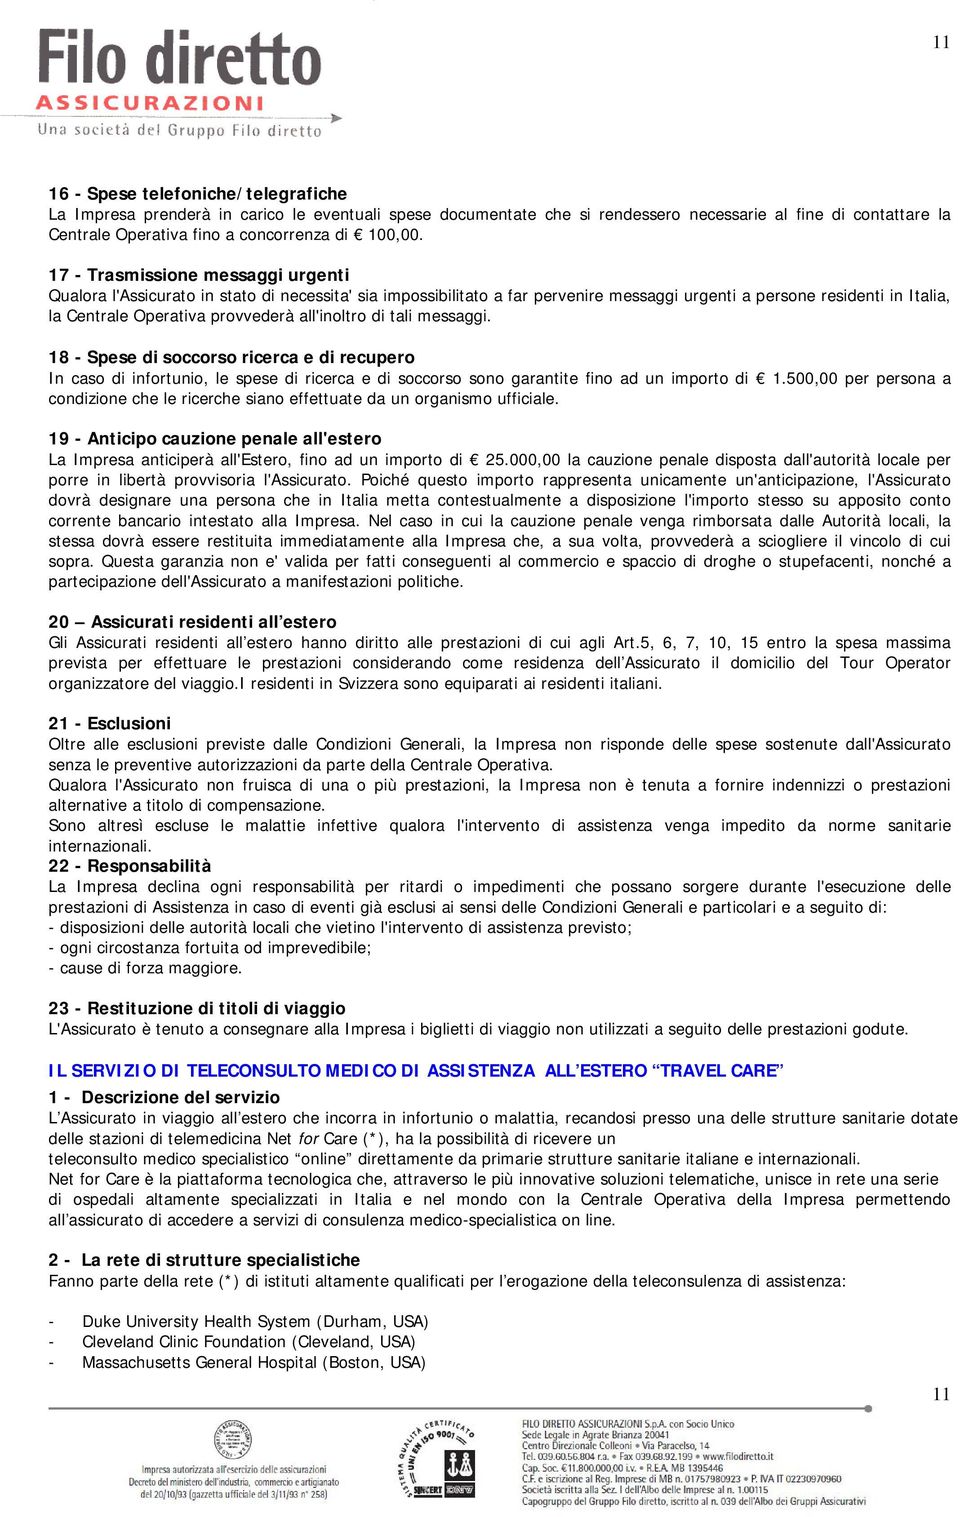 17 - Trasmissione messaggi urgenti Qualora l'assicurato in stato di necessita' sia impossibilitato a far pervenire messaggi urgenti a persone residenti in Italia, la Centrale Operativa provvederà